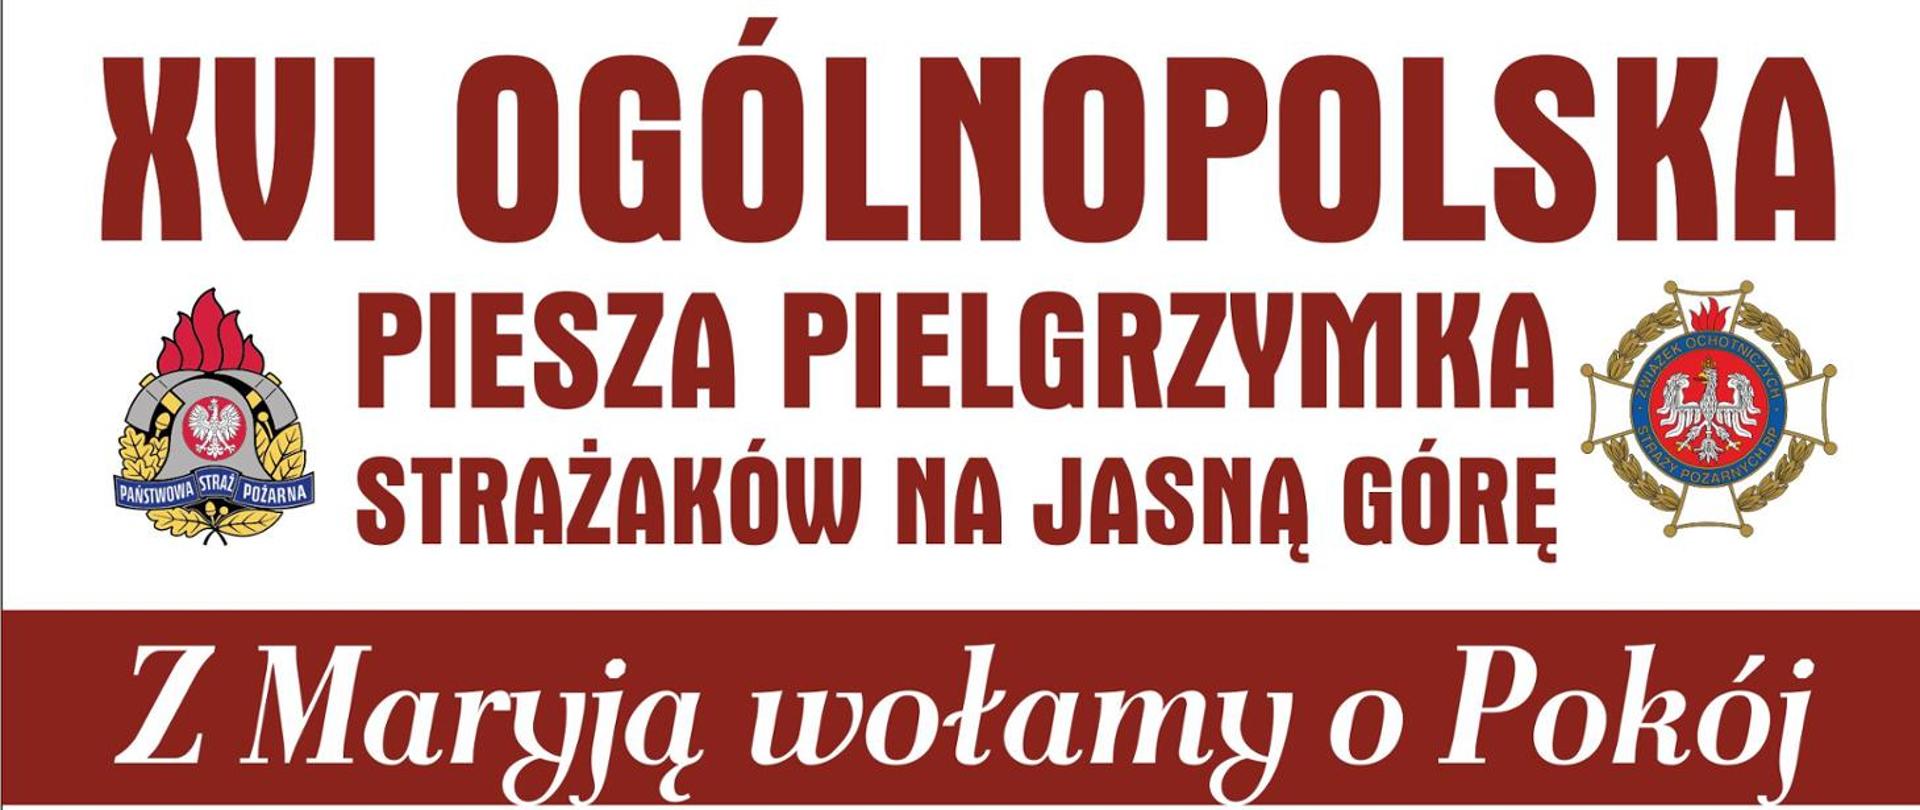 Informacja o XVI Ogólnopolskiej Pieszej Pielgrzymce Strażaków na Jasną Górę